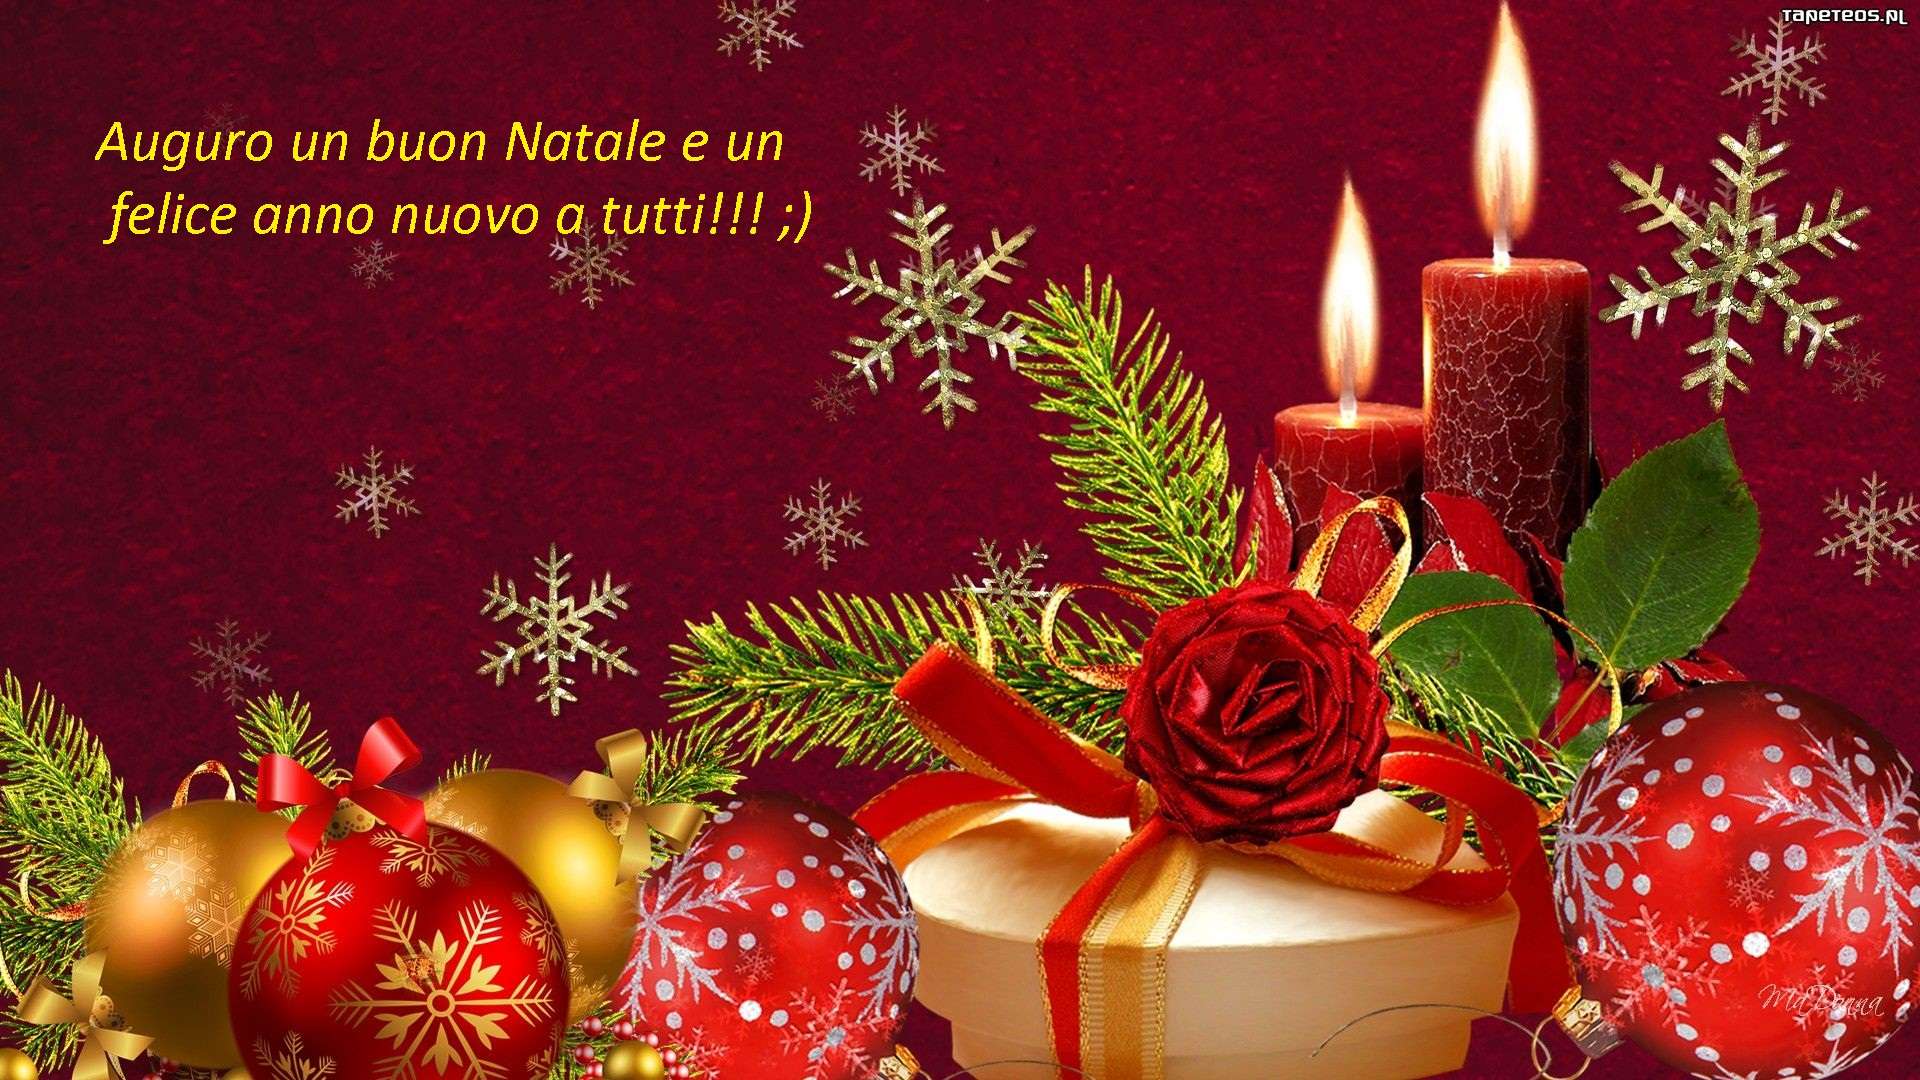 Immagini Auguri Di Natale E Buon Anno.Auguri Di Buon Natale E Felice Anno Nuovo Baronerosso It Forum Modellismo